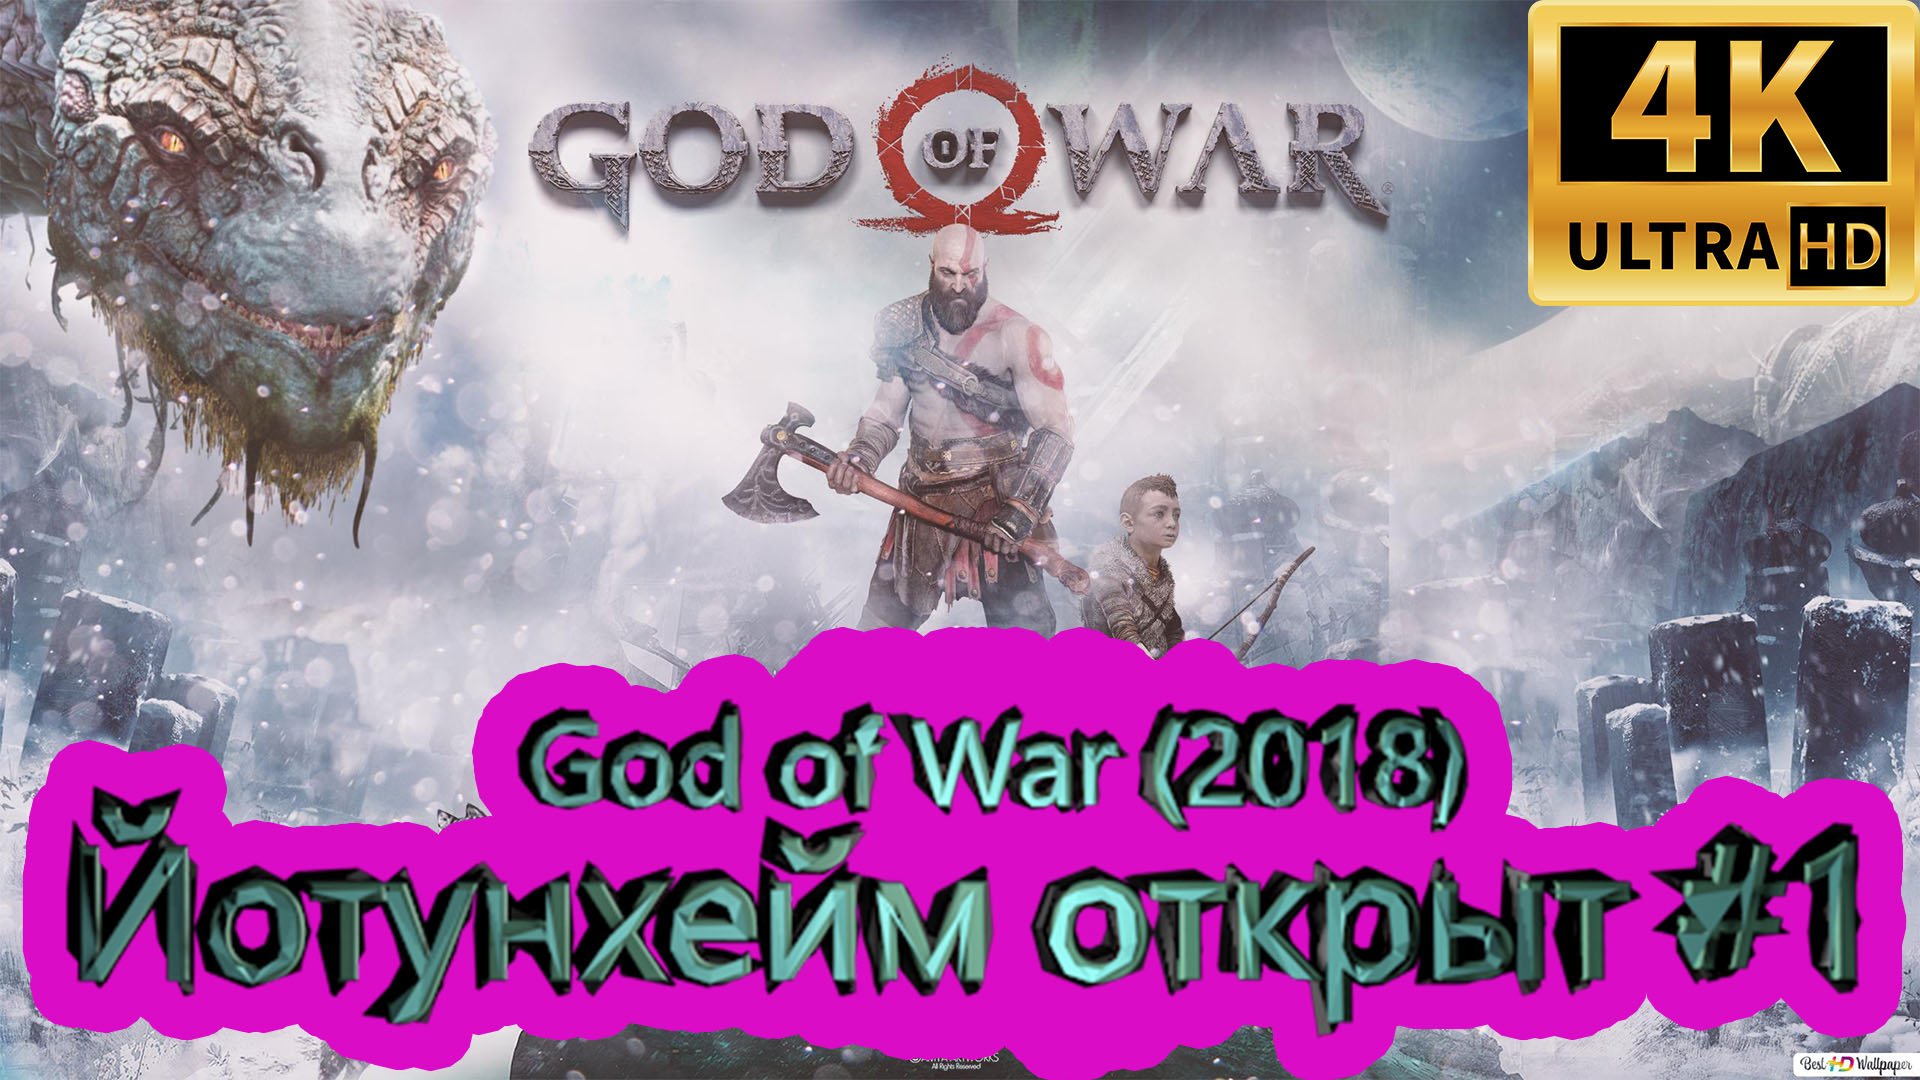 God of War прохождение (2018) [4K]  ► Йотунхейм открыт ► ГОД ОФ ВАР ► #49 /RTX 3080 Ti